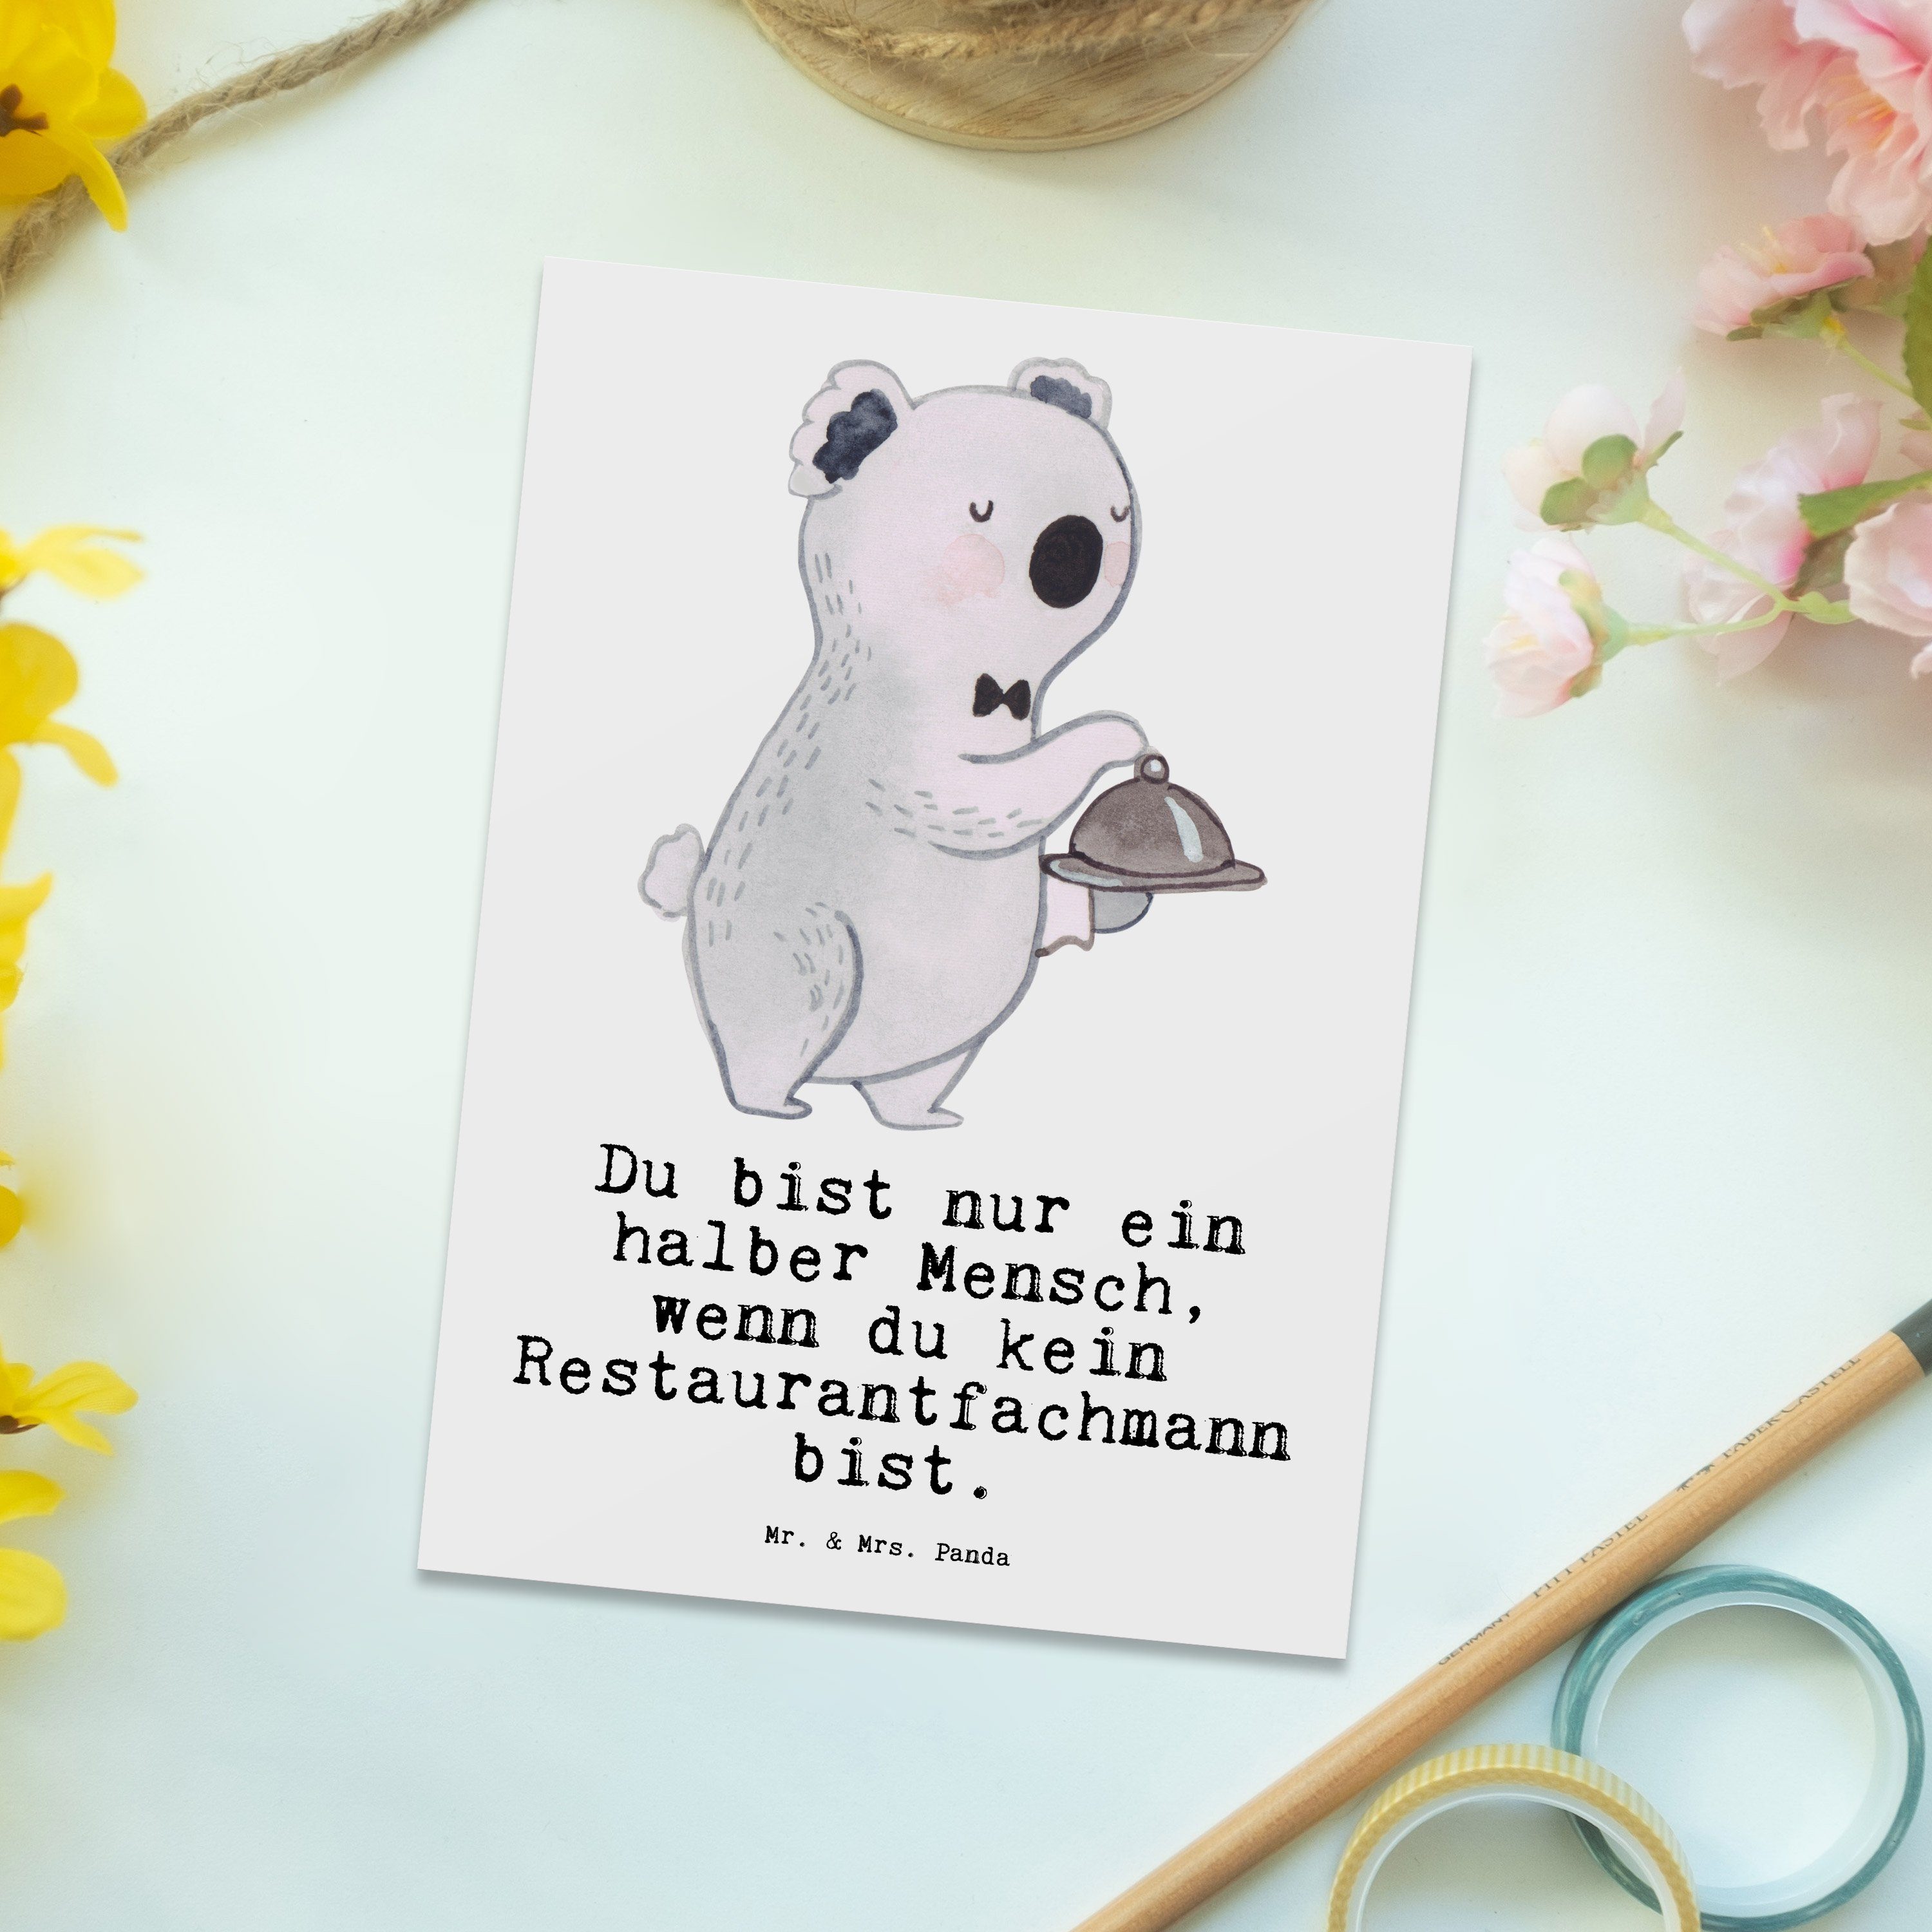 Mr. & Mrs. mit Panda Ausbildung, Geschenk, - Weiß - Restaurantfachmann Postkarte Herz Rente, Gru